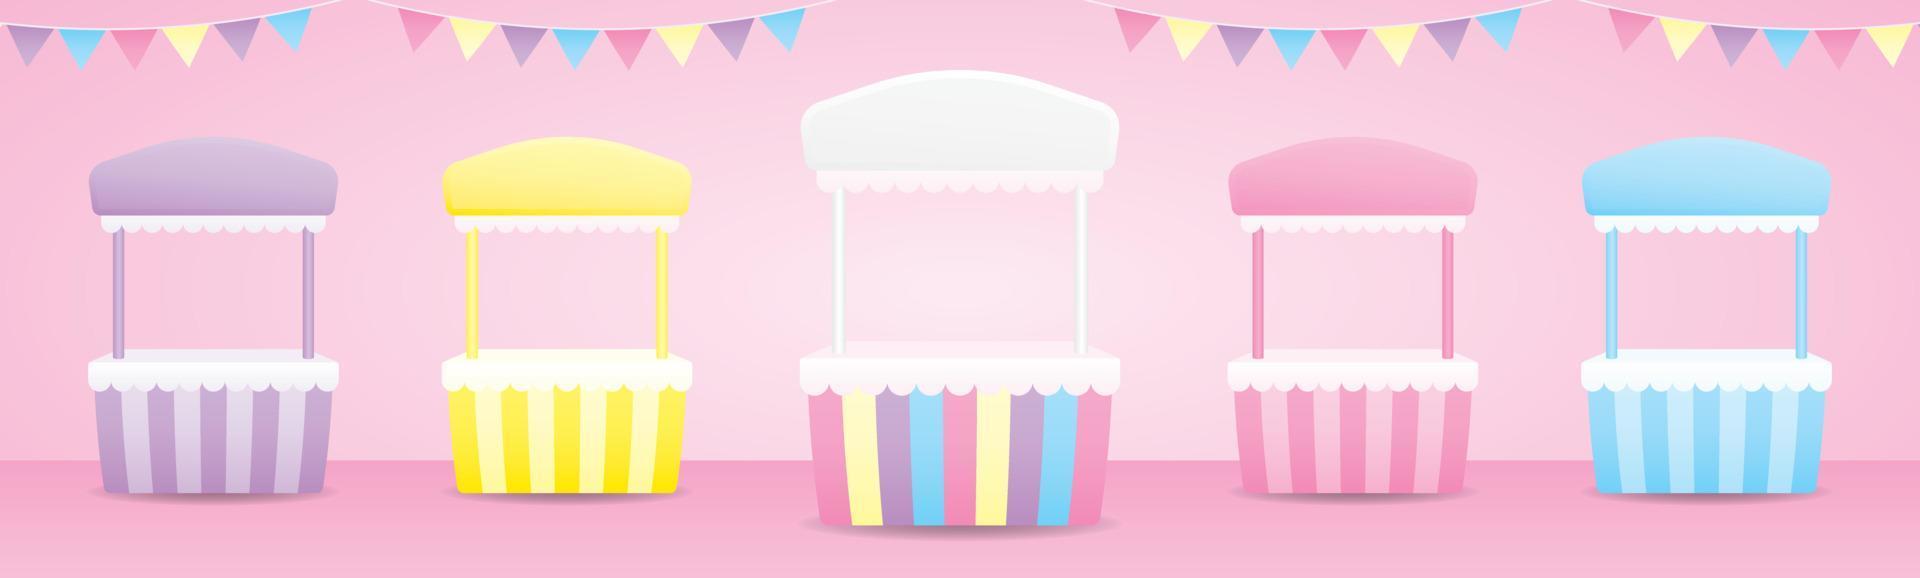 carino dolce pastello pop-up negozio stand raccolta 3d illustrazione vettoriale